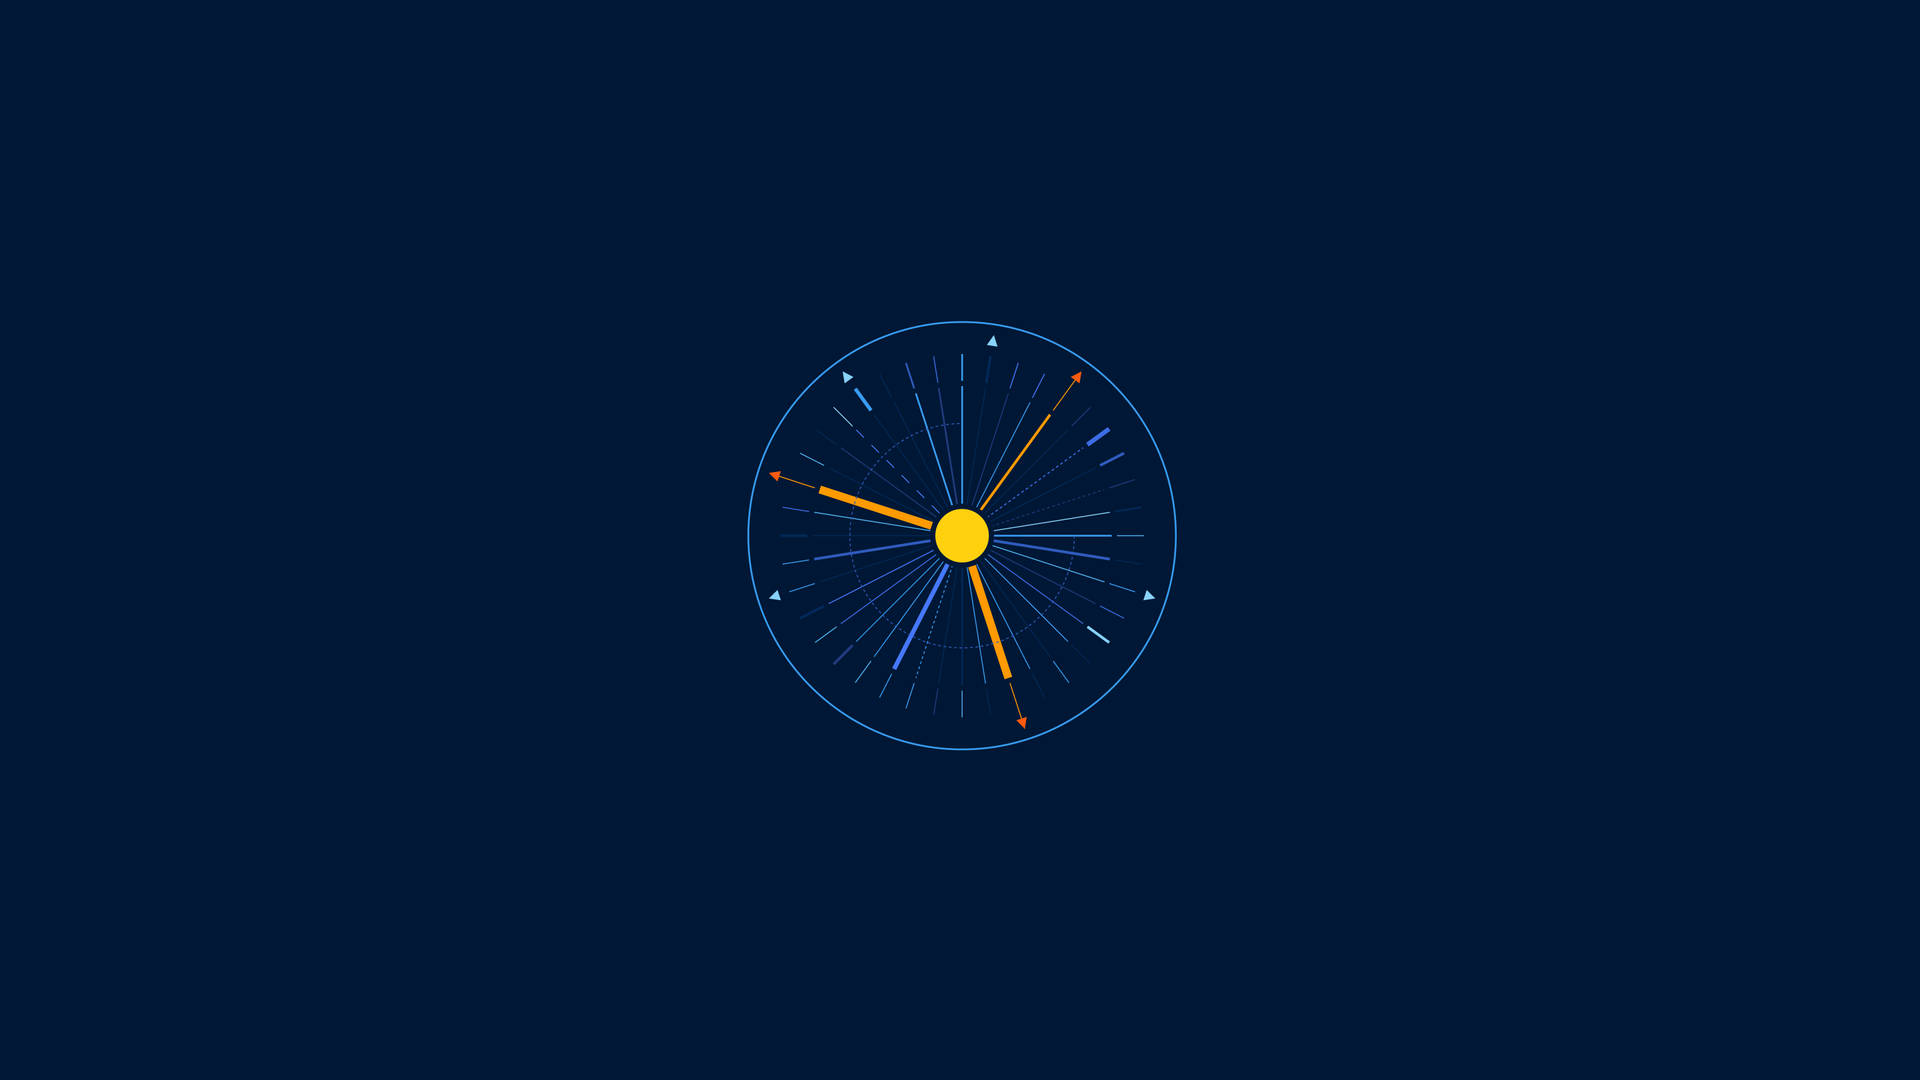 Minimalist Time Clock Wallpaper